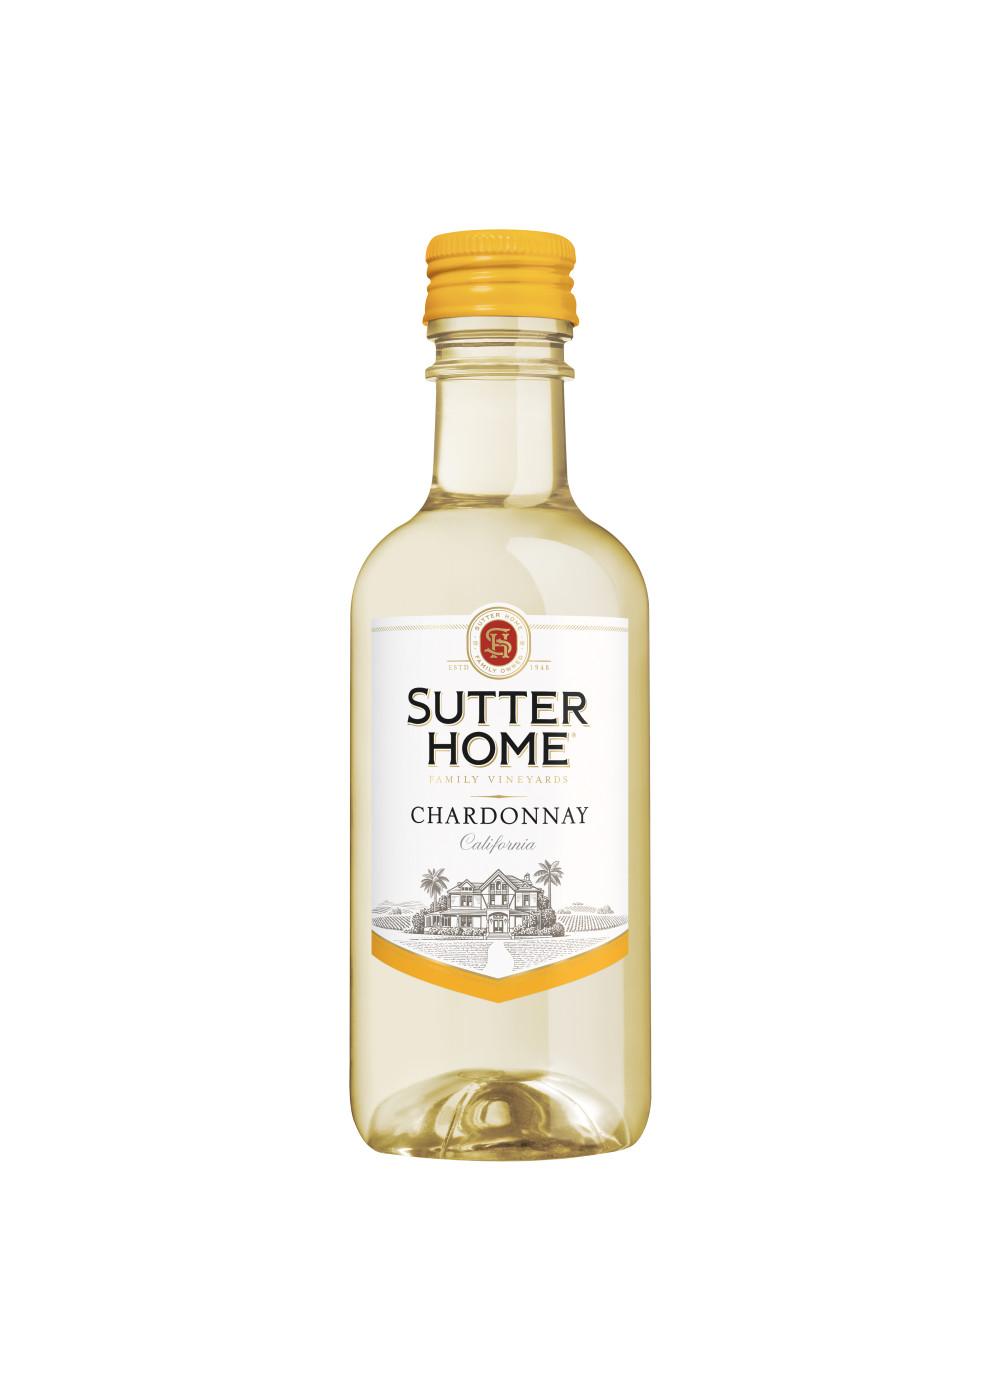 Sutter Home Family Vineyards Chardonnay White Wine 4 pk Bottles; image 6 of 8